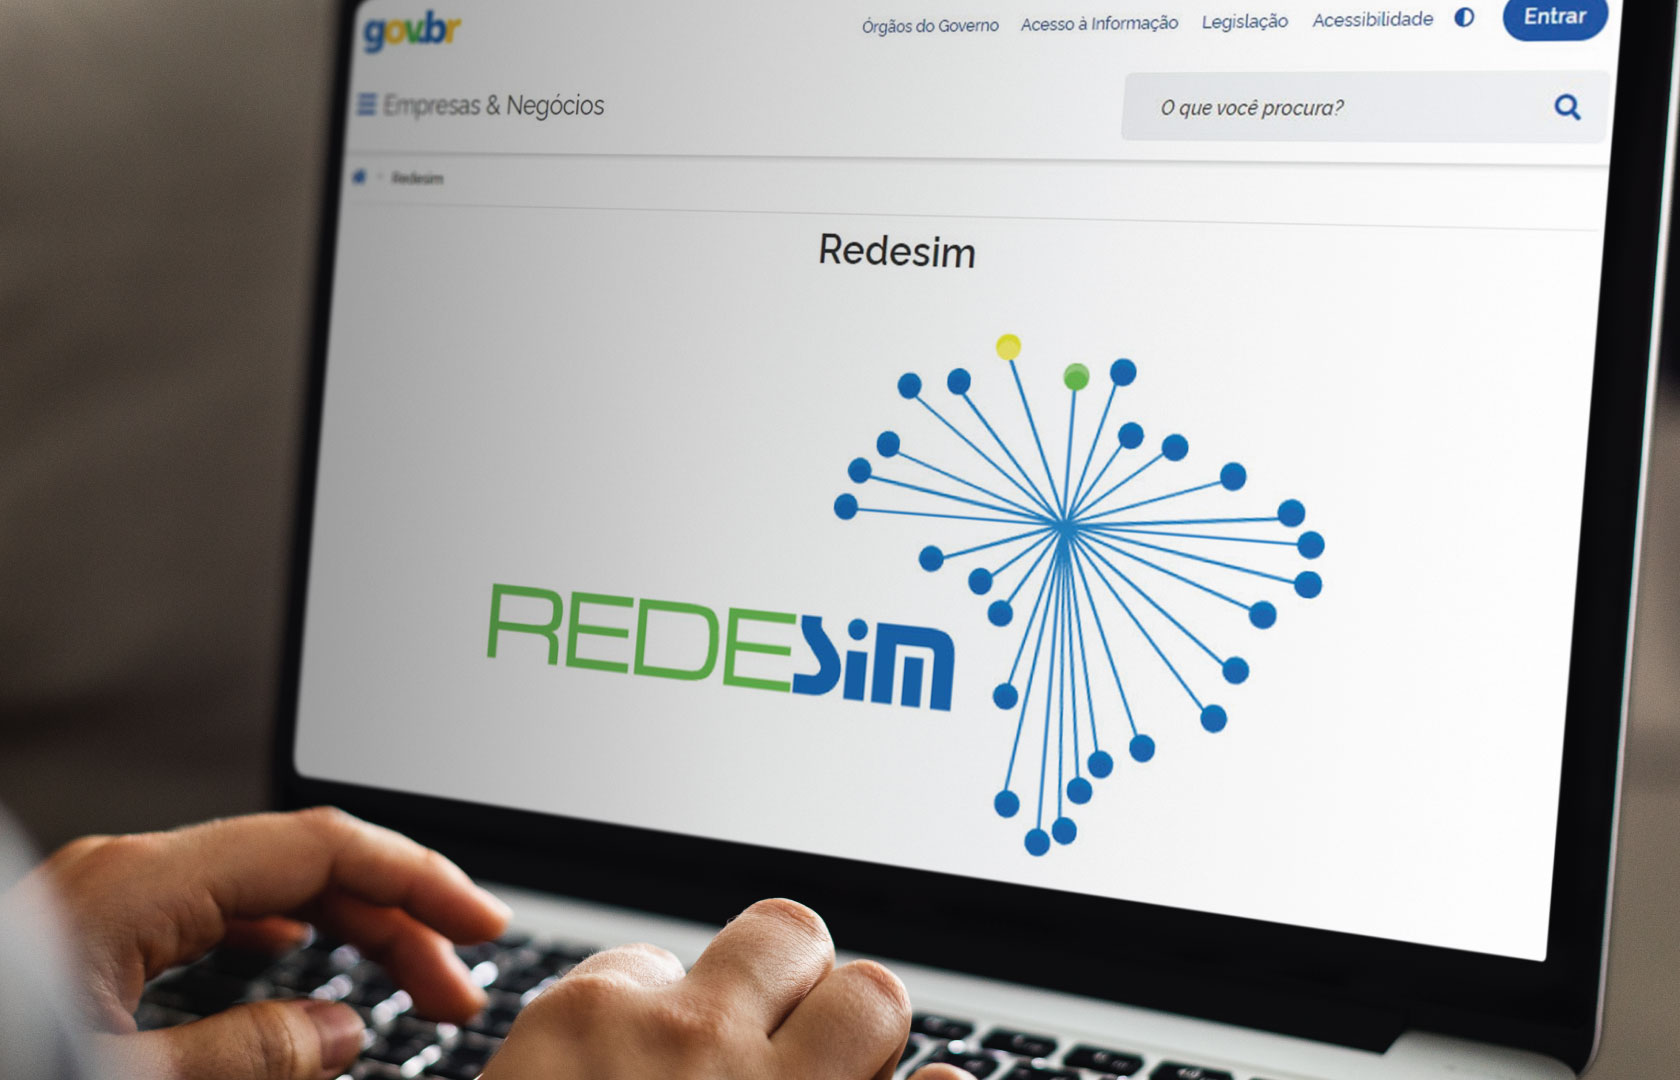 Rondonópolis | A partir de segunda-feira (3) pedidos de licença serão feitos digitalmente pela Redesim